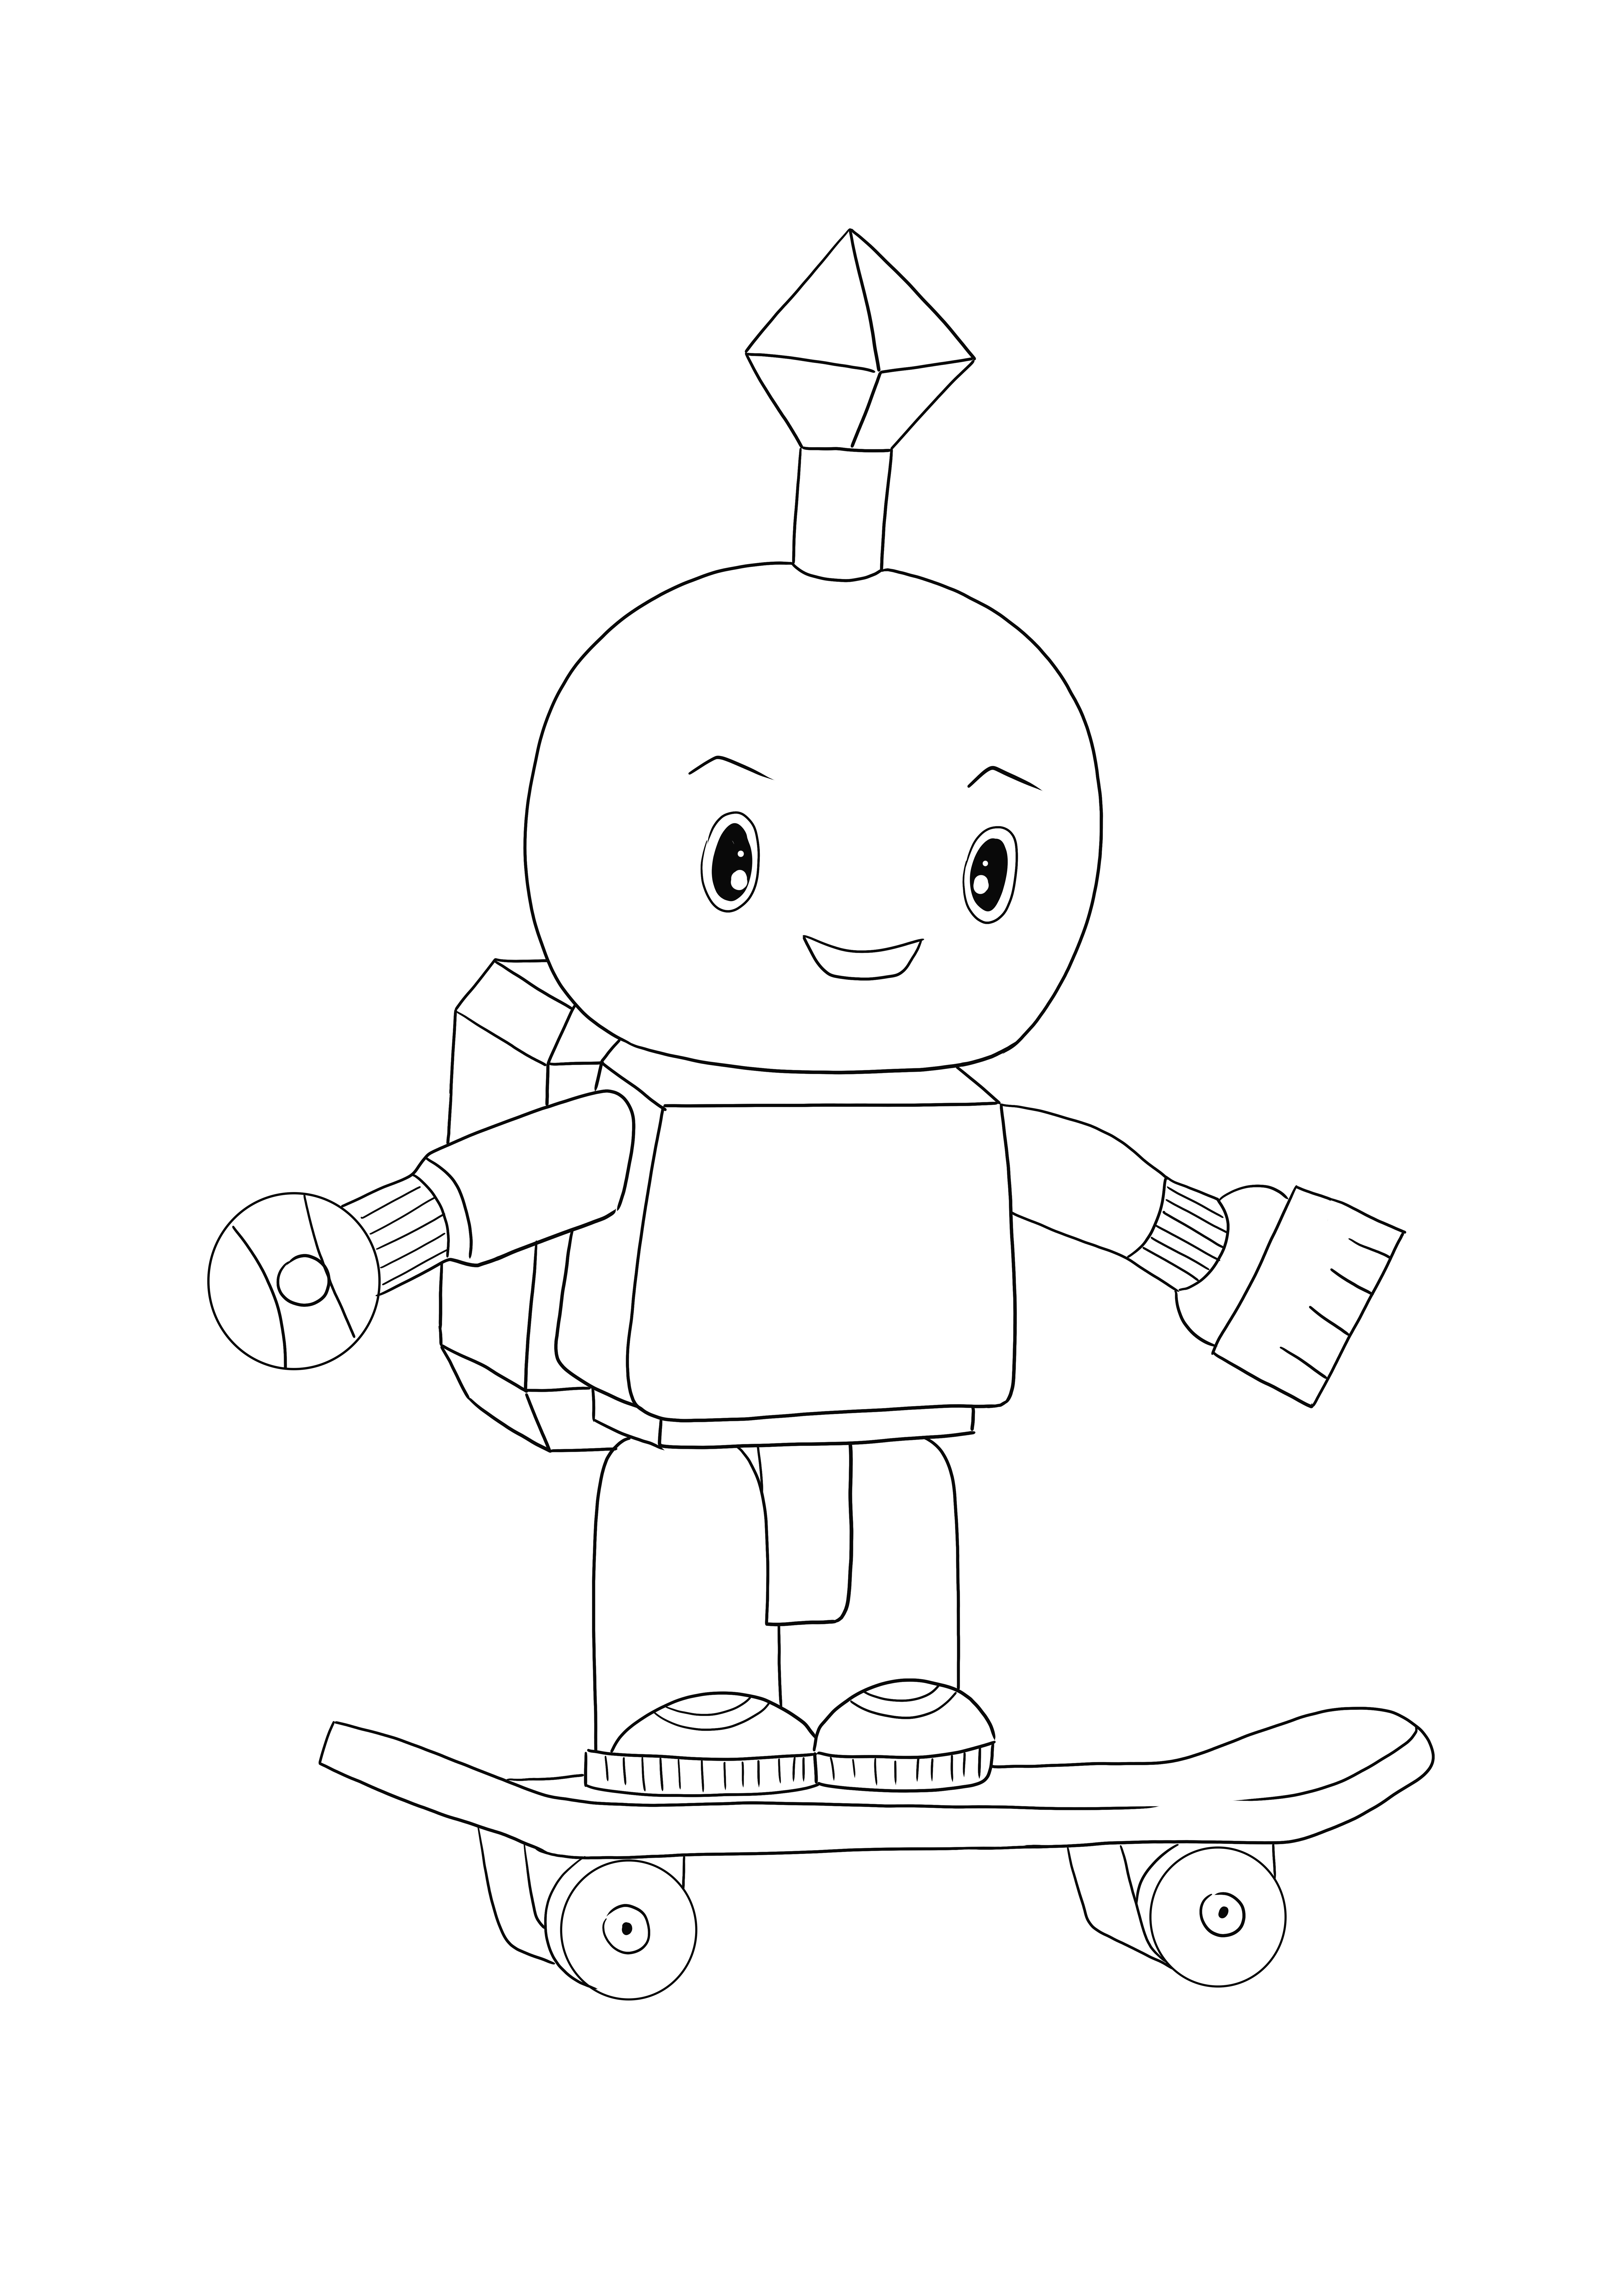 Roblox Robot gratis untuk diunduh dan mewarnai gambar untuk pecinta robot